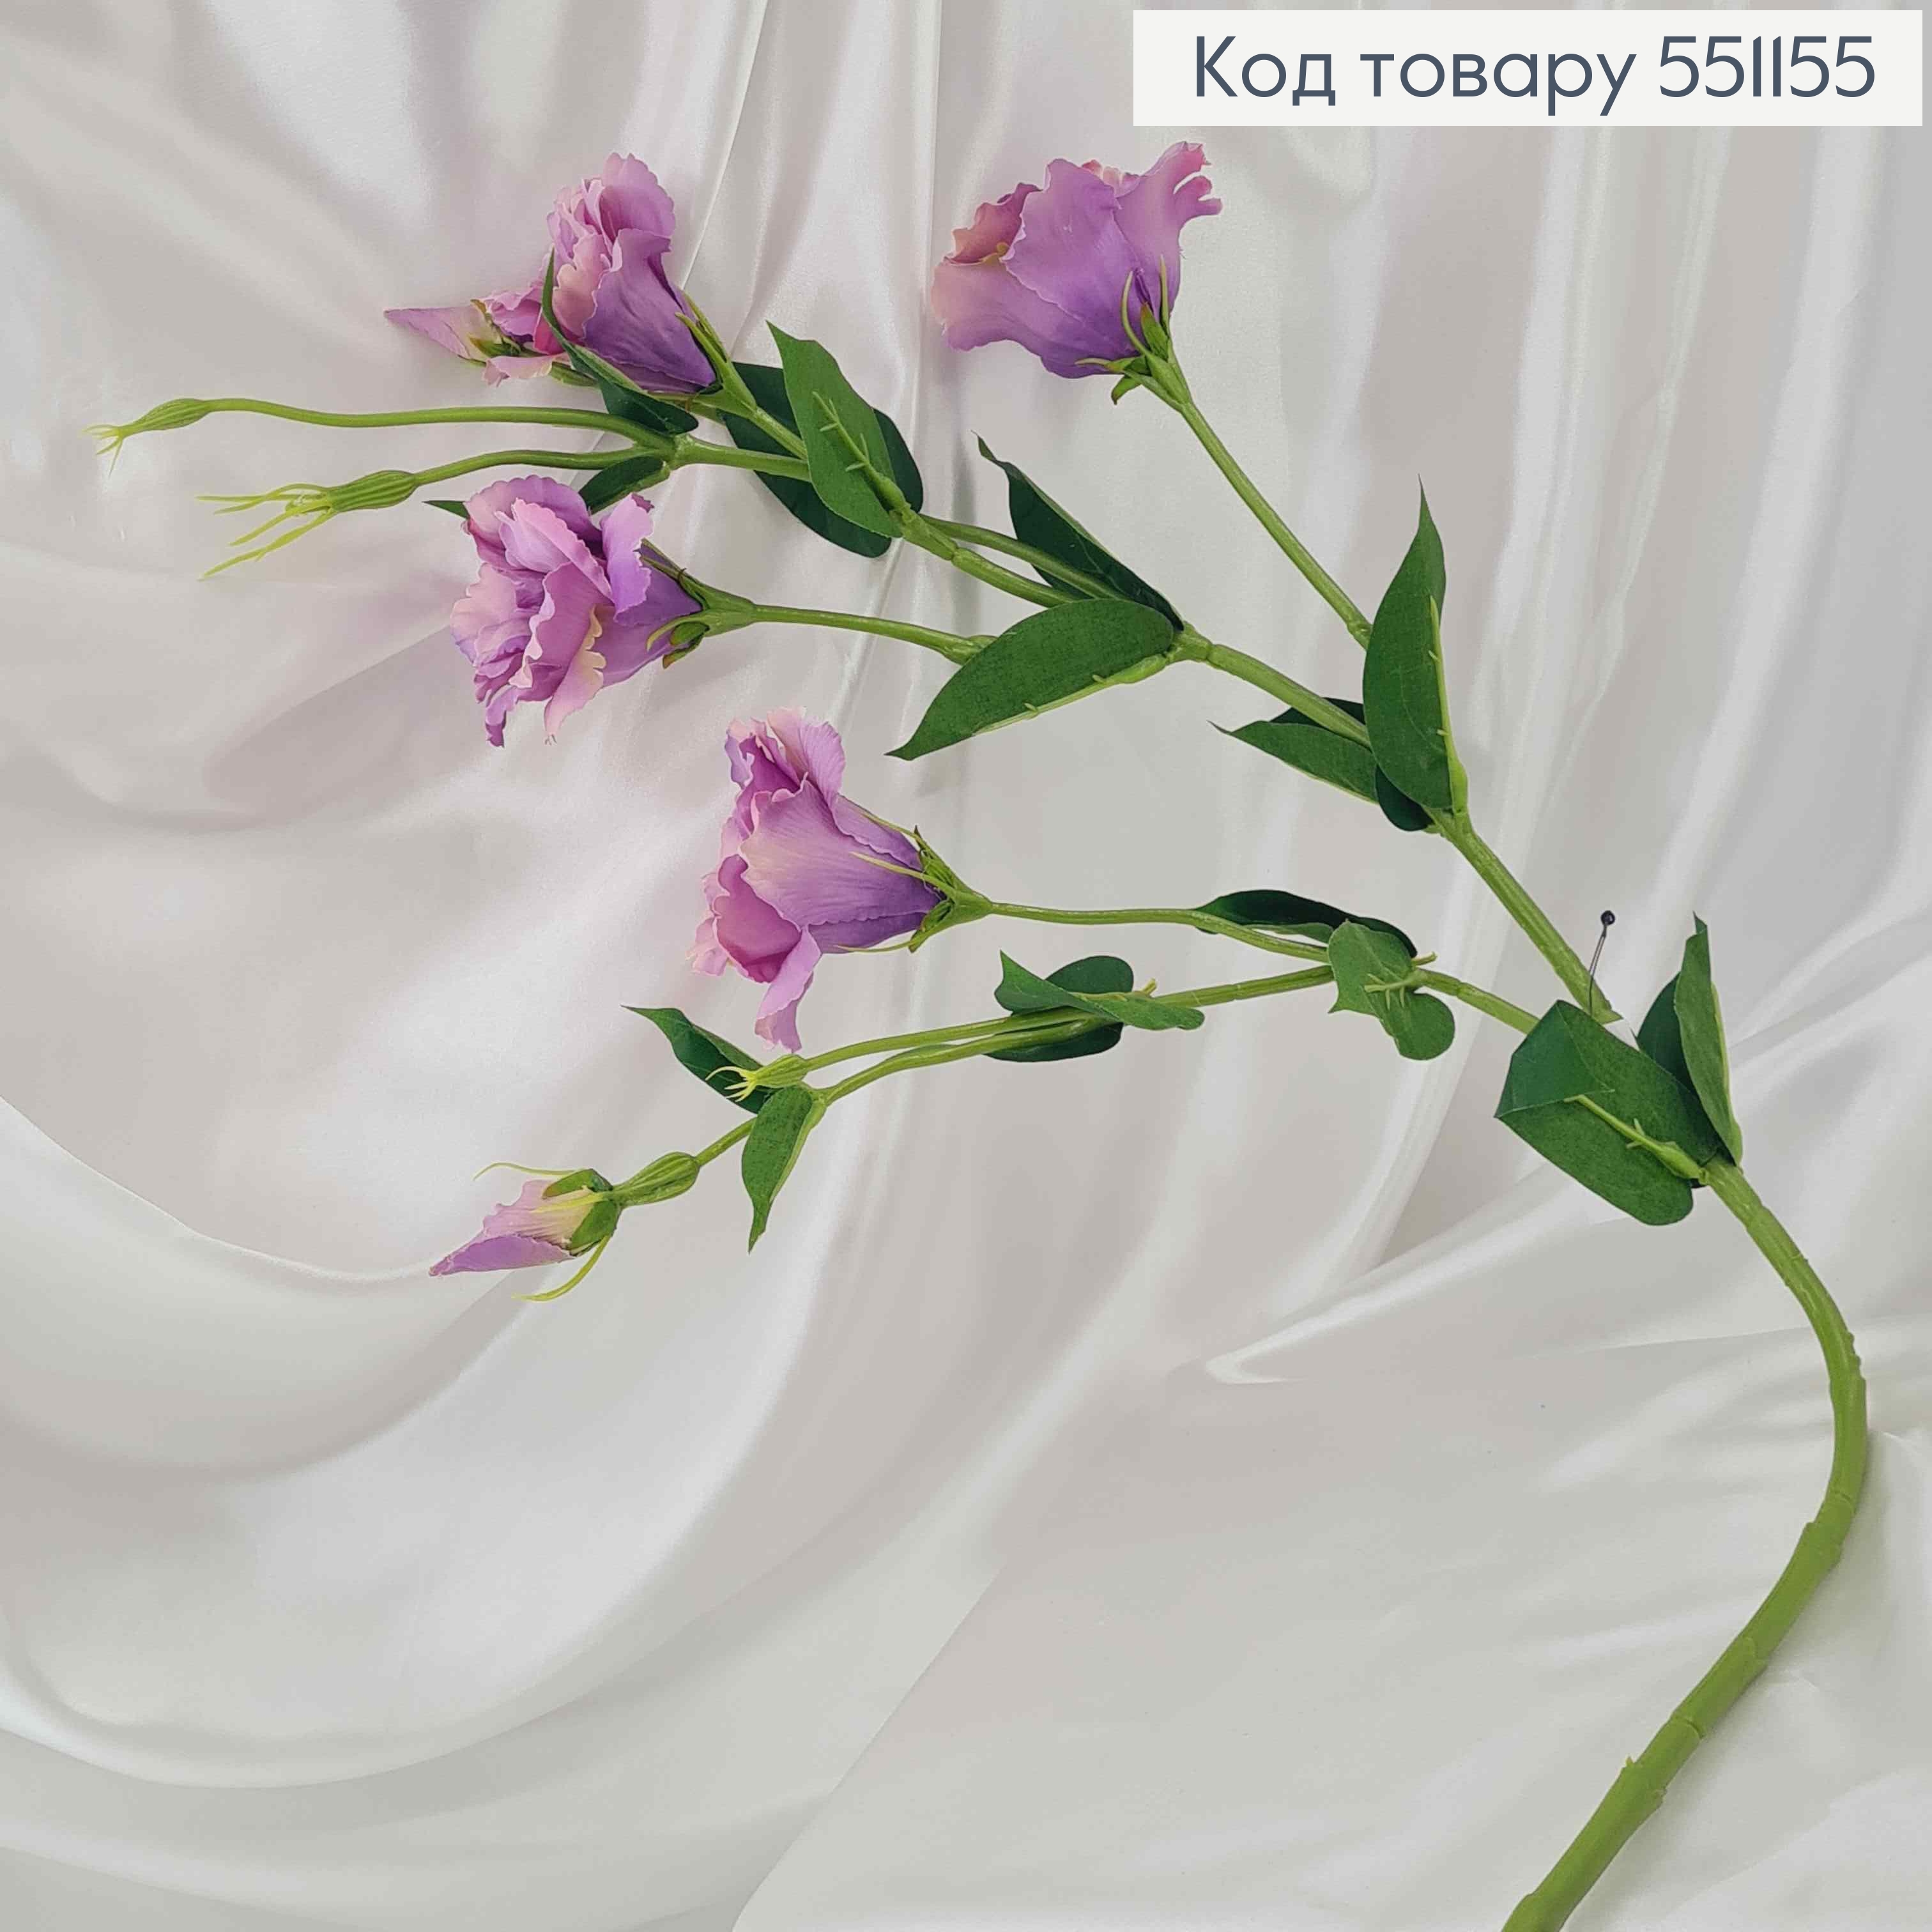 Искусственный цветок Эустомы, фиолетовый, 4 цветка + 2 бутона, на металлическом стержне, 82см 551155 фото 2